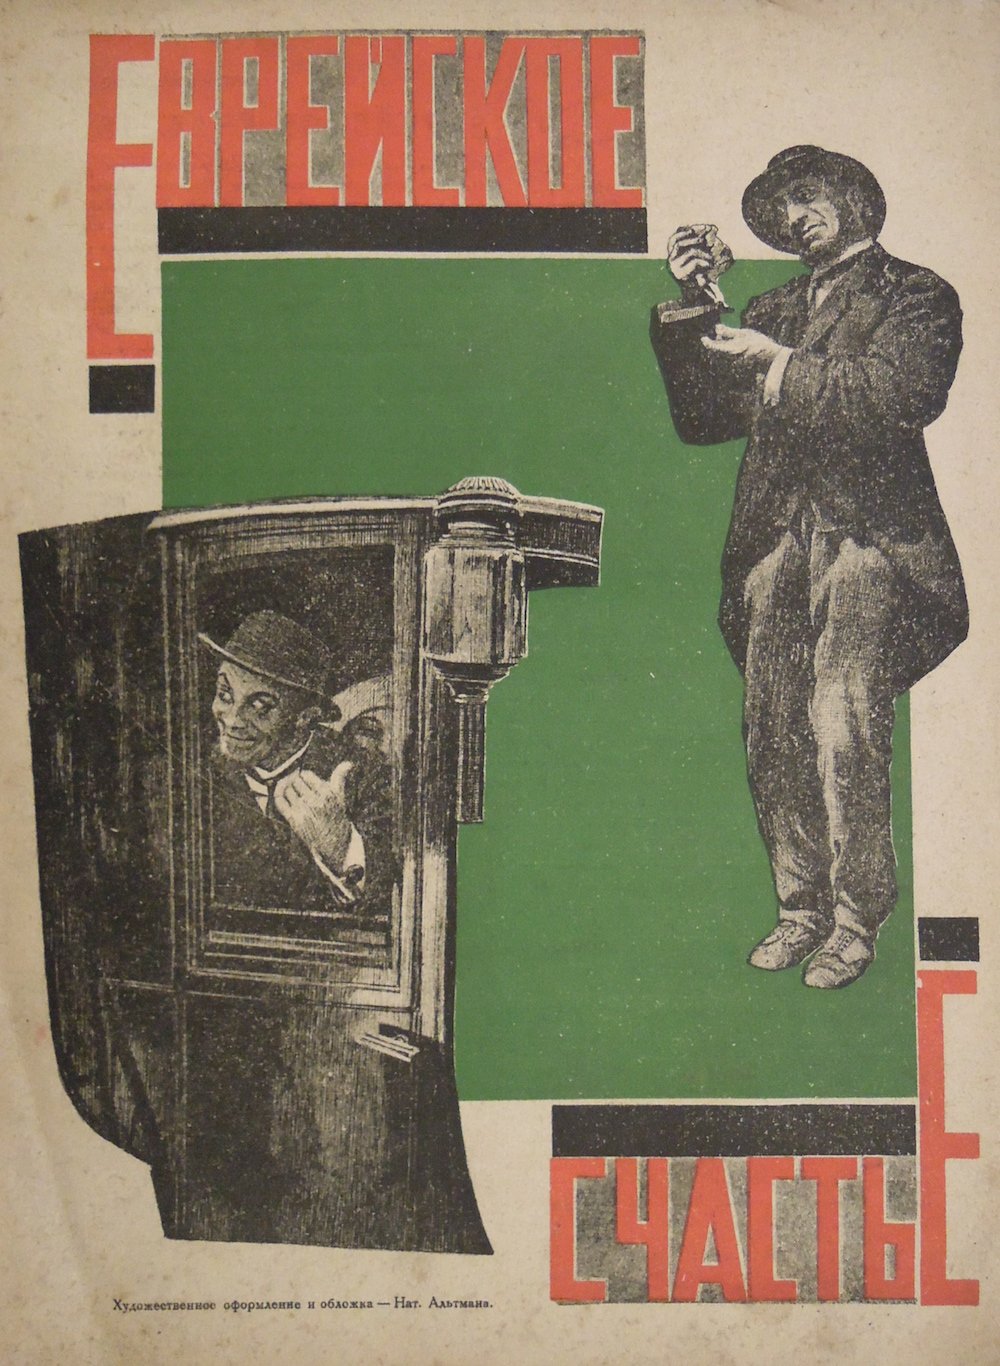 Natan Altman’s poster for the 1925 film <em>Jewish Luck</em> (dir. Alexis Granovsky)